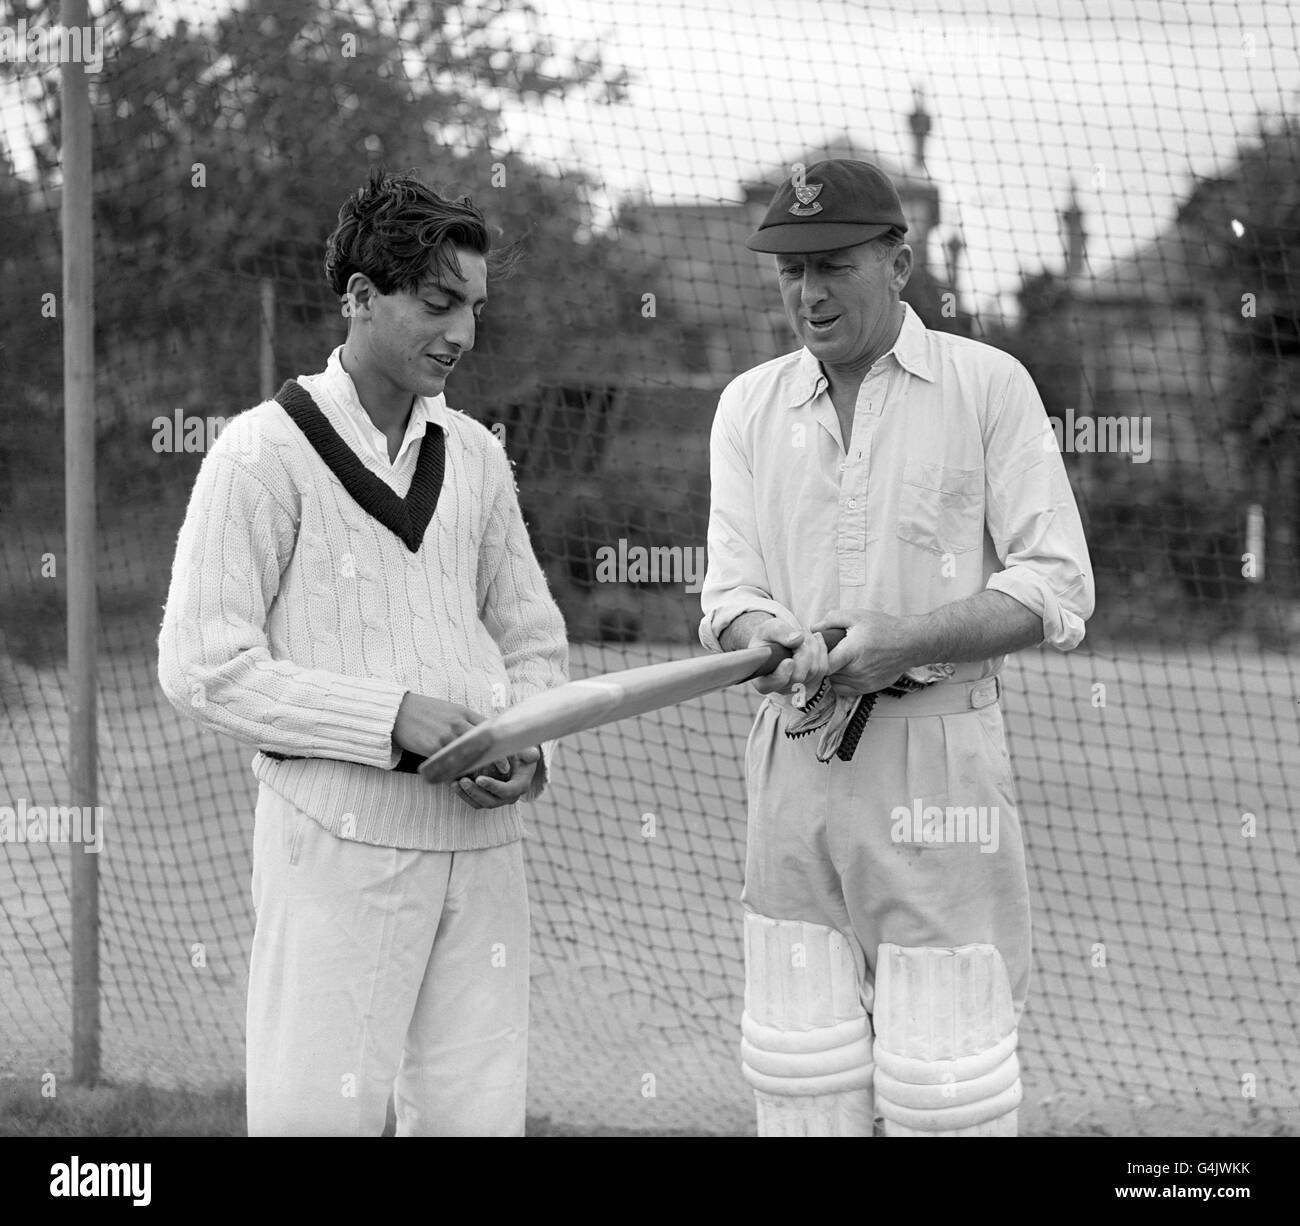 Für den 16-jährigen Nawab von Pataudi (Mansur Ali Khan) im Bild links, der mit dem ehemaligen Sussex-Schläger George Cox über die Vorzüge eines Cricket-Schlägers diskutiert, ist eine brillante Cricket-Zukunft vorgesehen. Pataudi, der bereits für die Sussex Second Eleven auftritt, ist ein Schuljunge am Winchester College. Er ist der Sohn des berühmten Cricketers Nawab von Pataudi (Oxford University, Worcestershire und Indien), der den Rekord-Einzelstand im University-Spiel erzielte, als er 238 gegen Cambridge mit 1931:00 nicht für Oxford ausging. Stockfoto